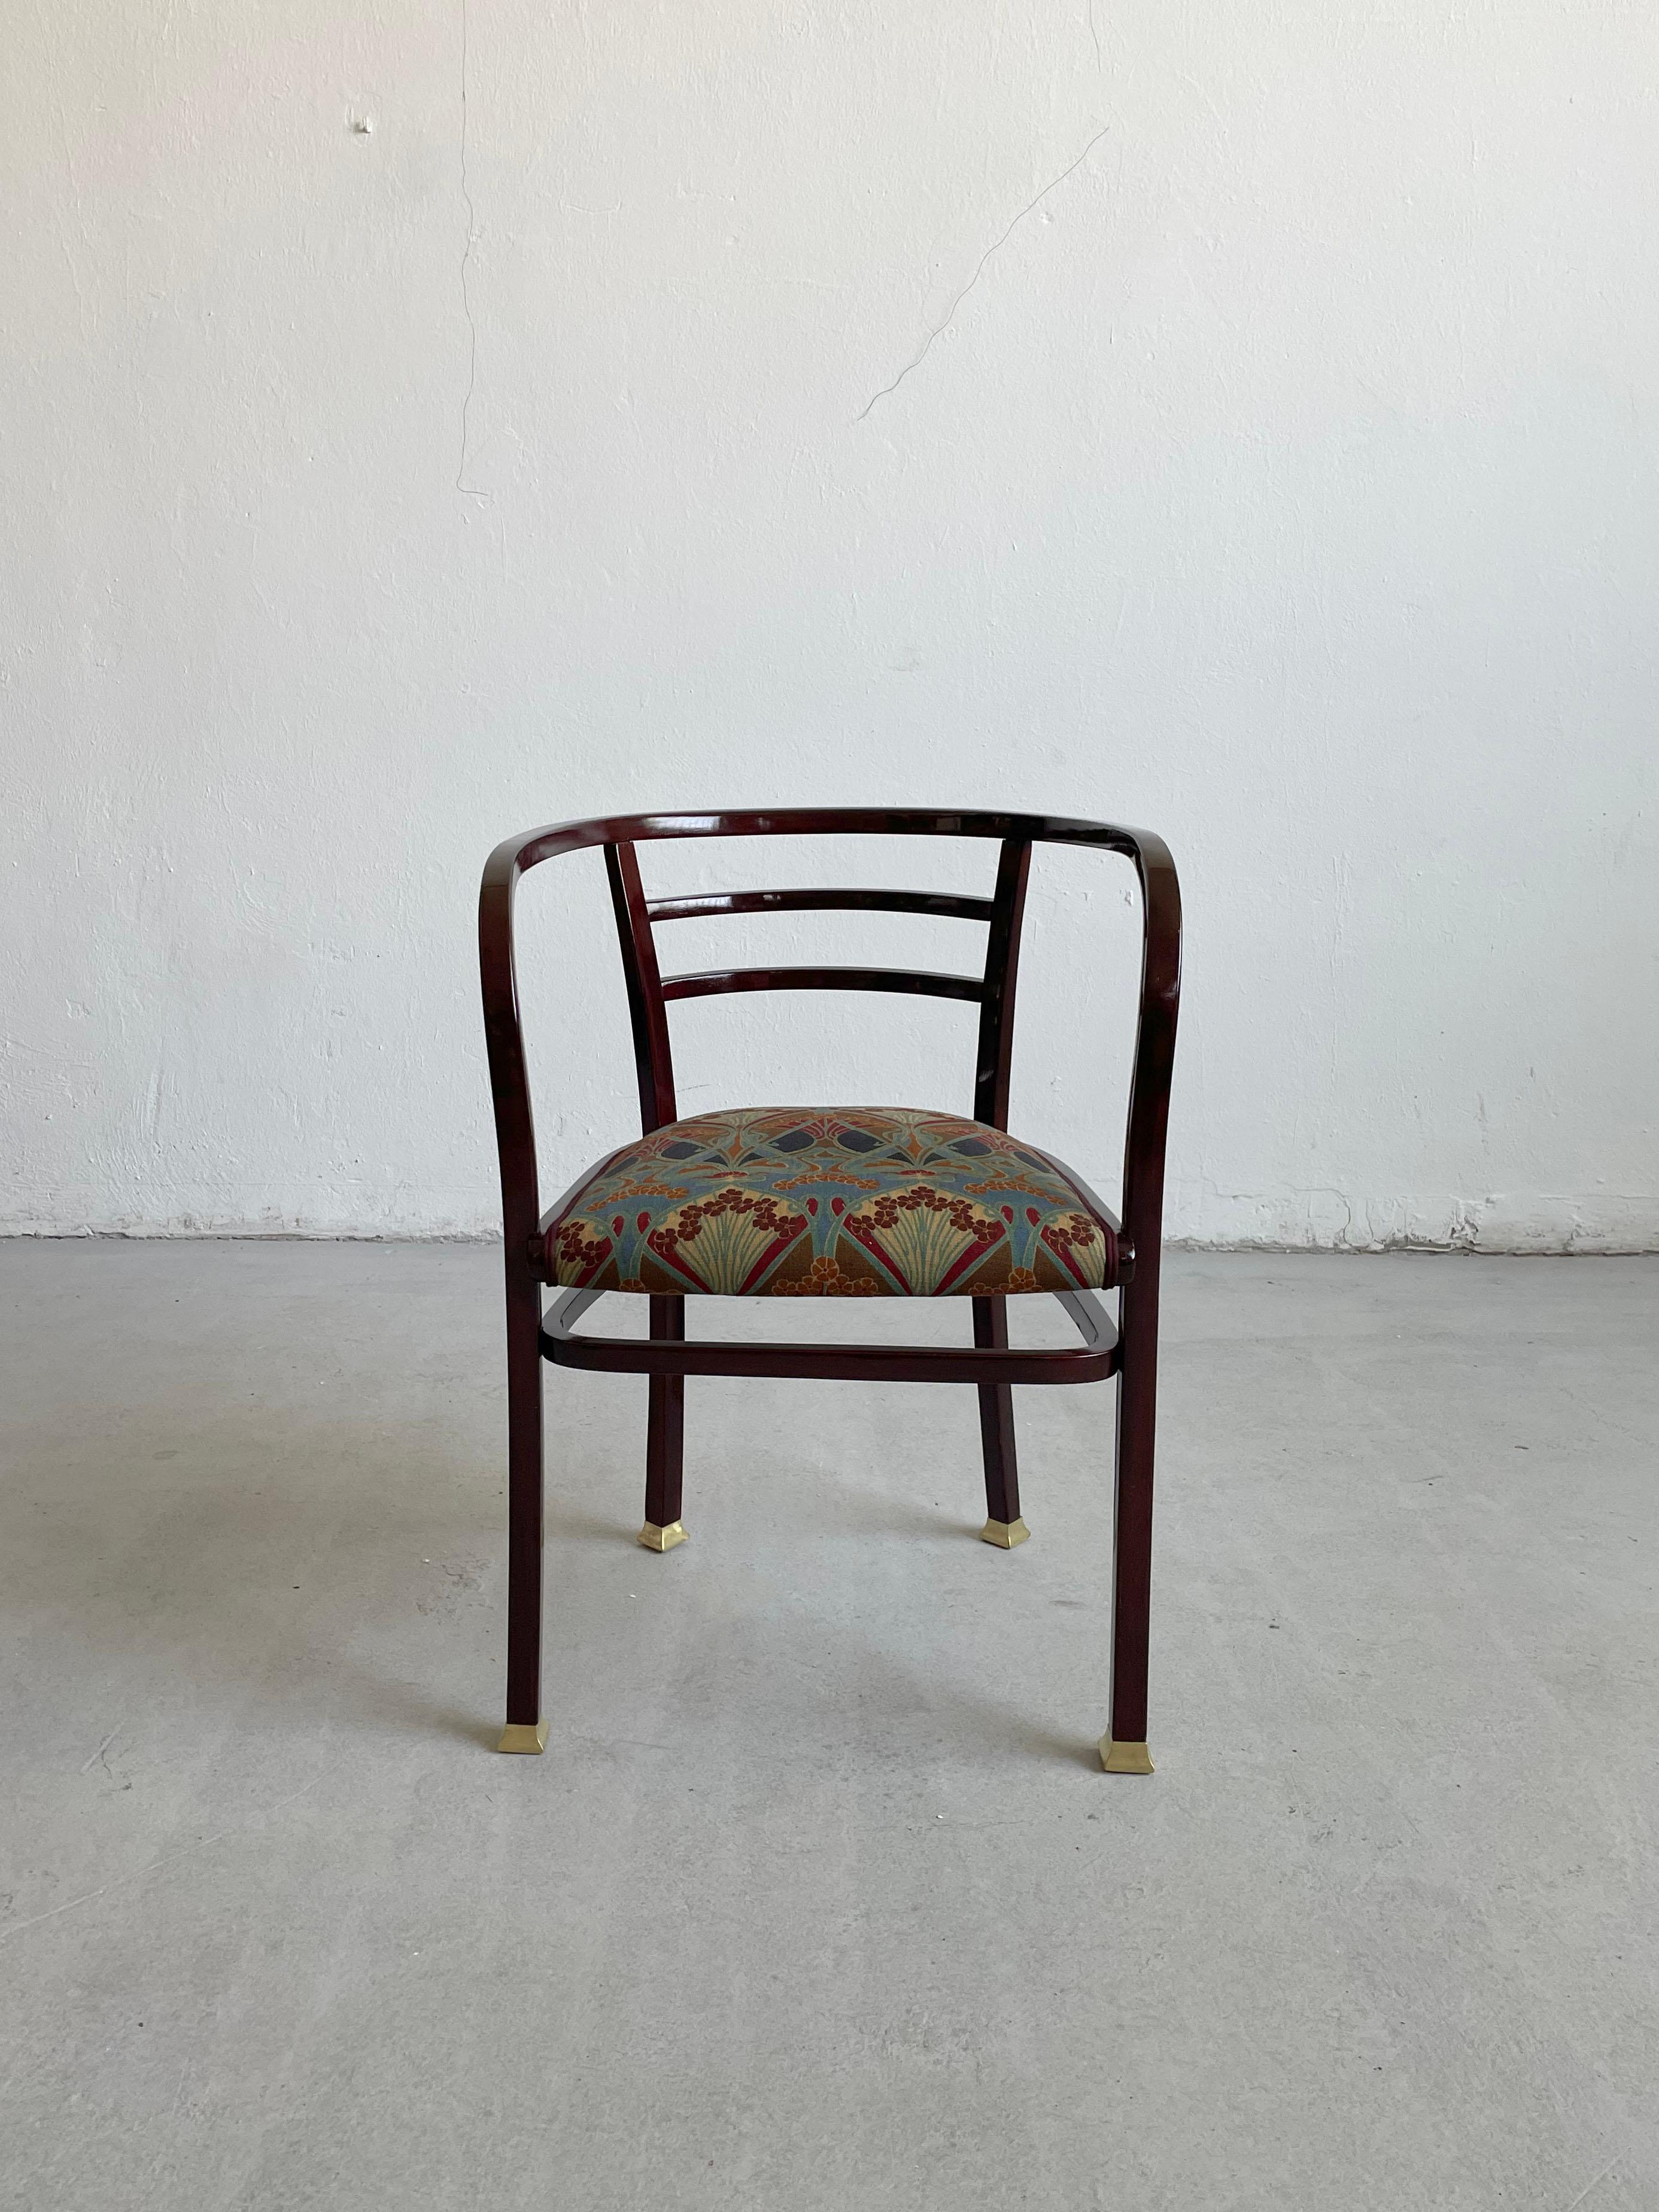 vollständig restaurierter Sessel von Otto Wagner, 1902. Bugholz. Für Thonet, Wien.

Der Stuhl wurde professionell restauriert und mit einem Stoff im Liberty-Stil neu gepolstert.

 